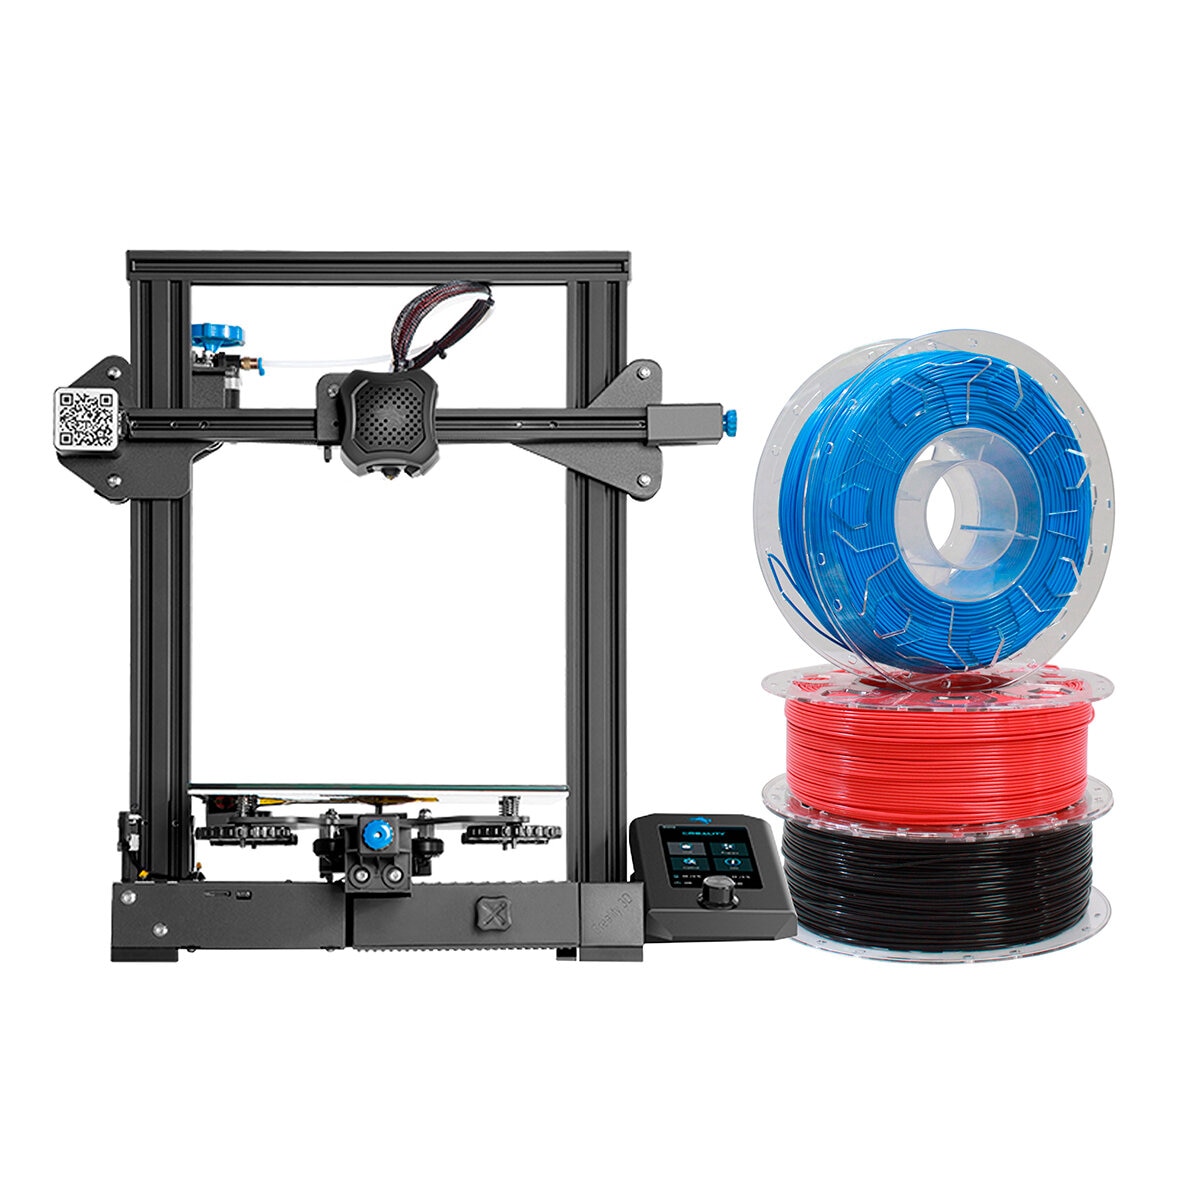 Creality Bundle Impresora 3D Ender 3V2 con 3 Filamentos